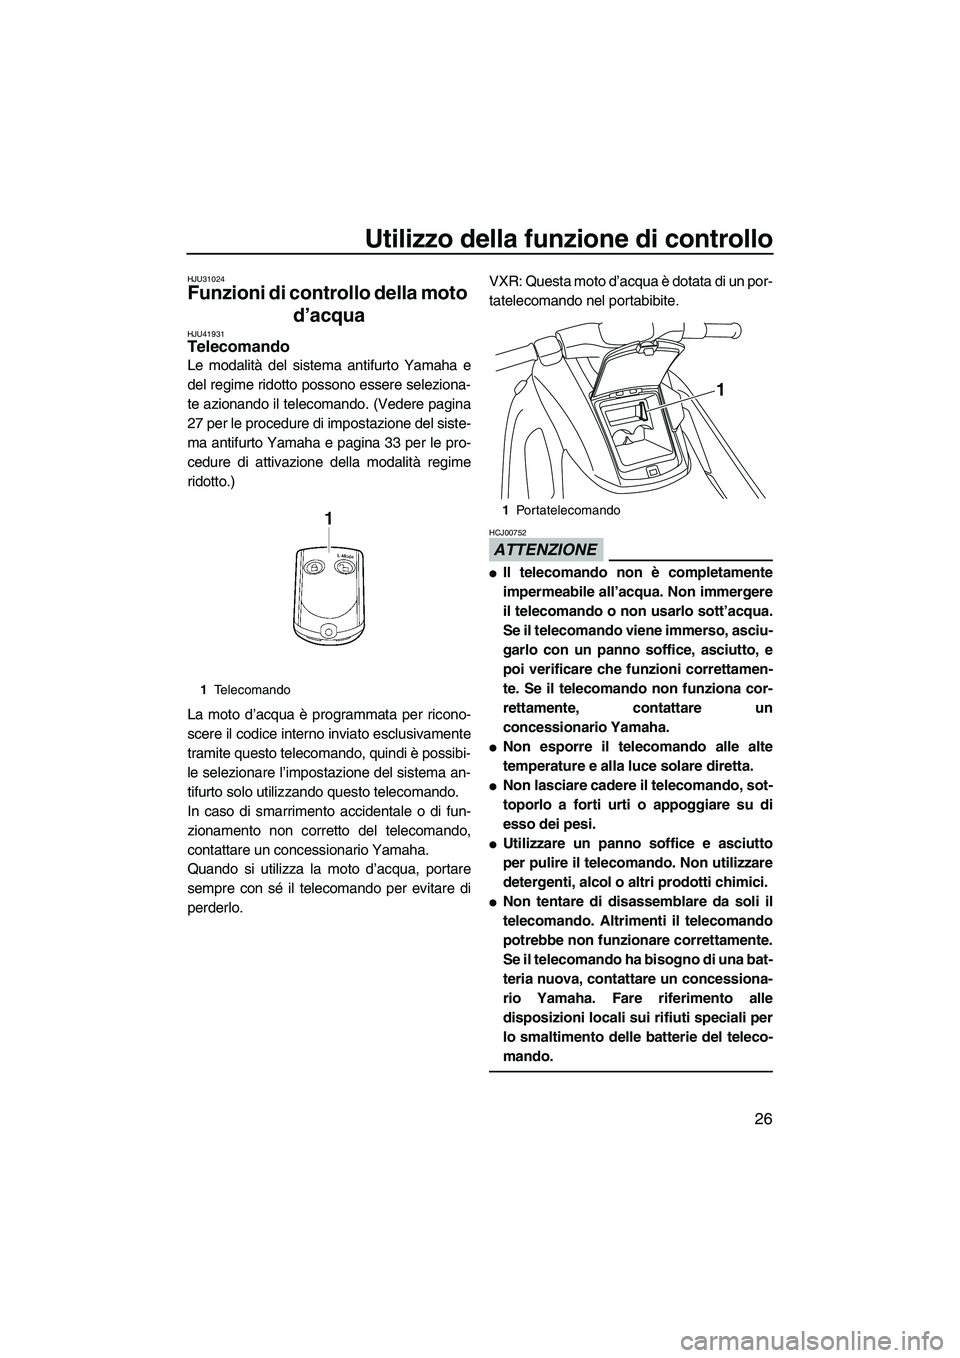 YAMAHA VXS 2013  Manuale duso (in Italian) Utilizzo della funzione di controllo
26
HJU31024
Funzioni di controllo della moto d’acqua 
HJU41931Telecomando 
Le modalità del sistema antifurto Yamaha e
del regime ridotto possono essere selezion